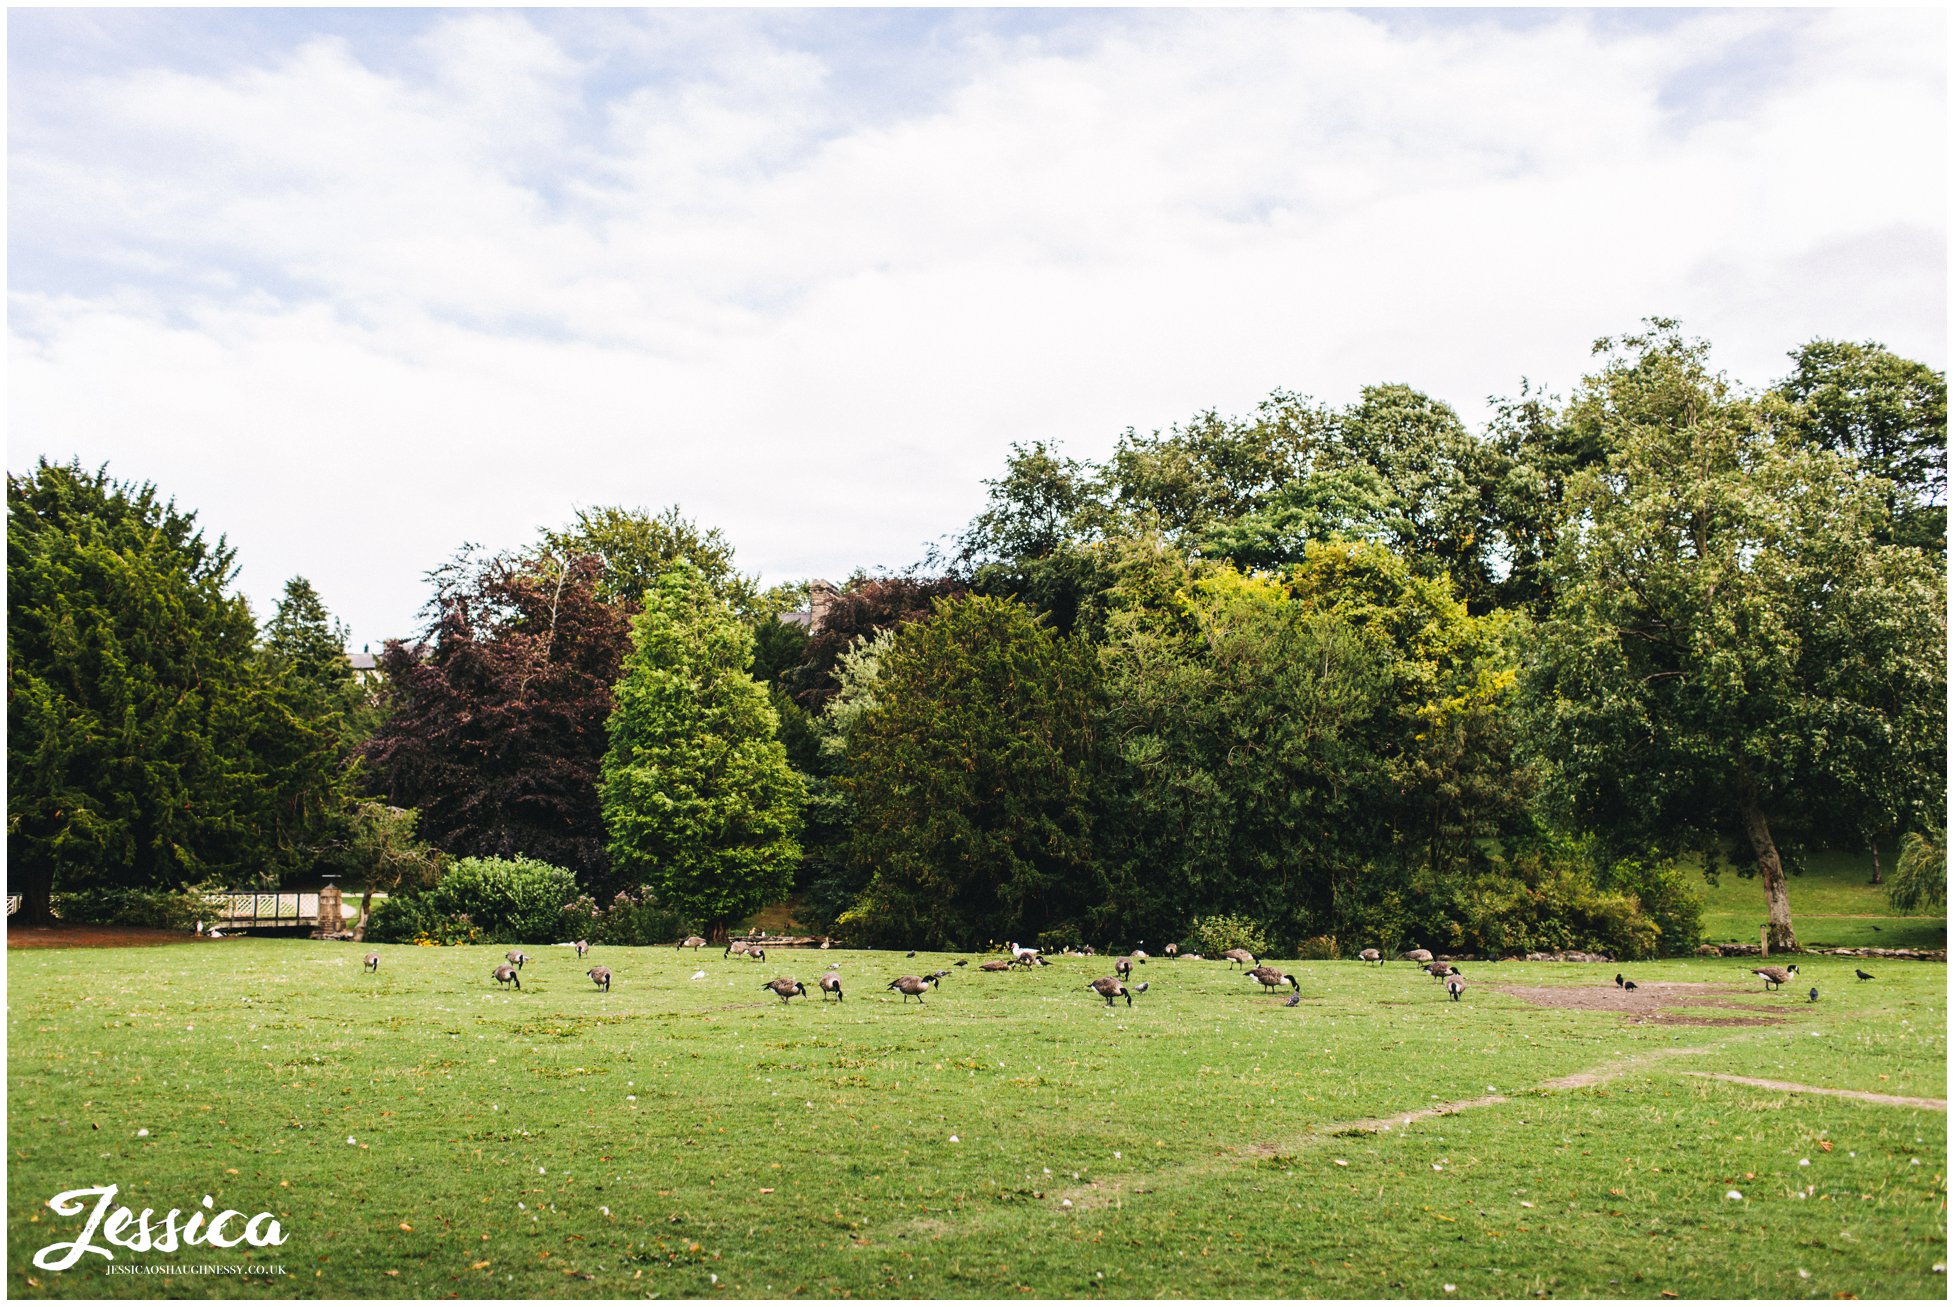 ducks in buxton pavilion gardens, derbyshire